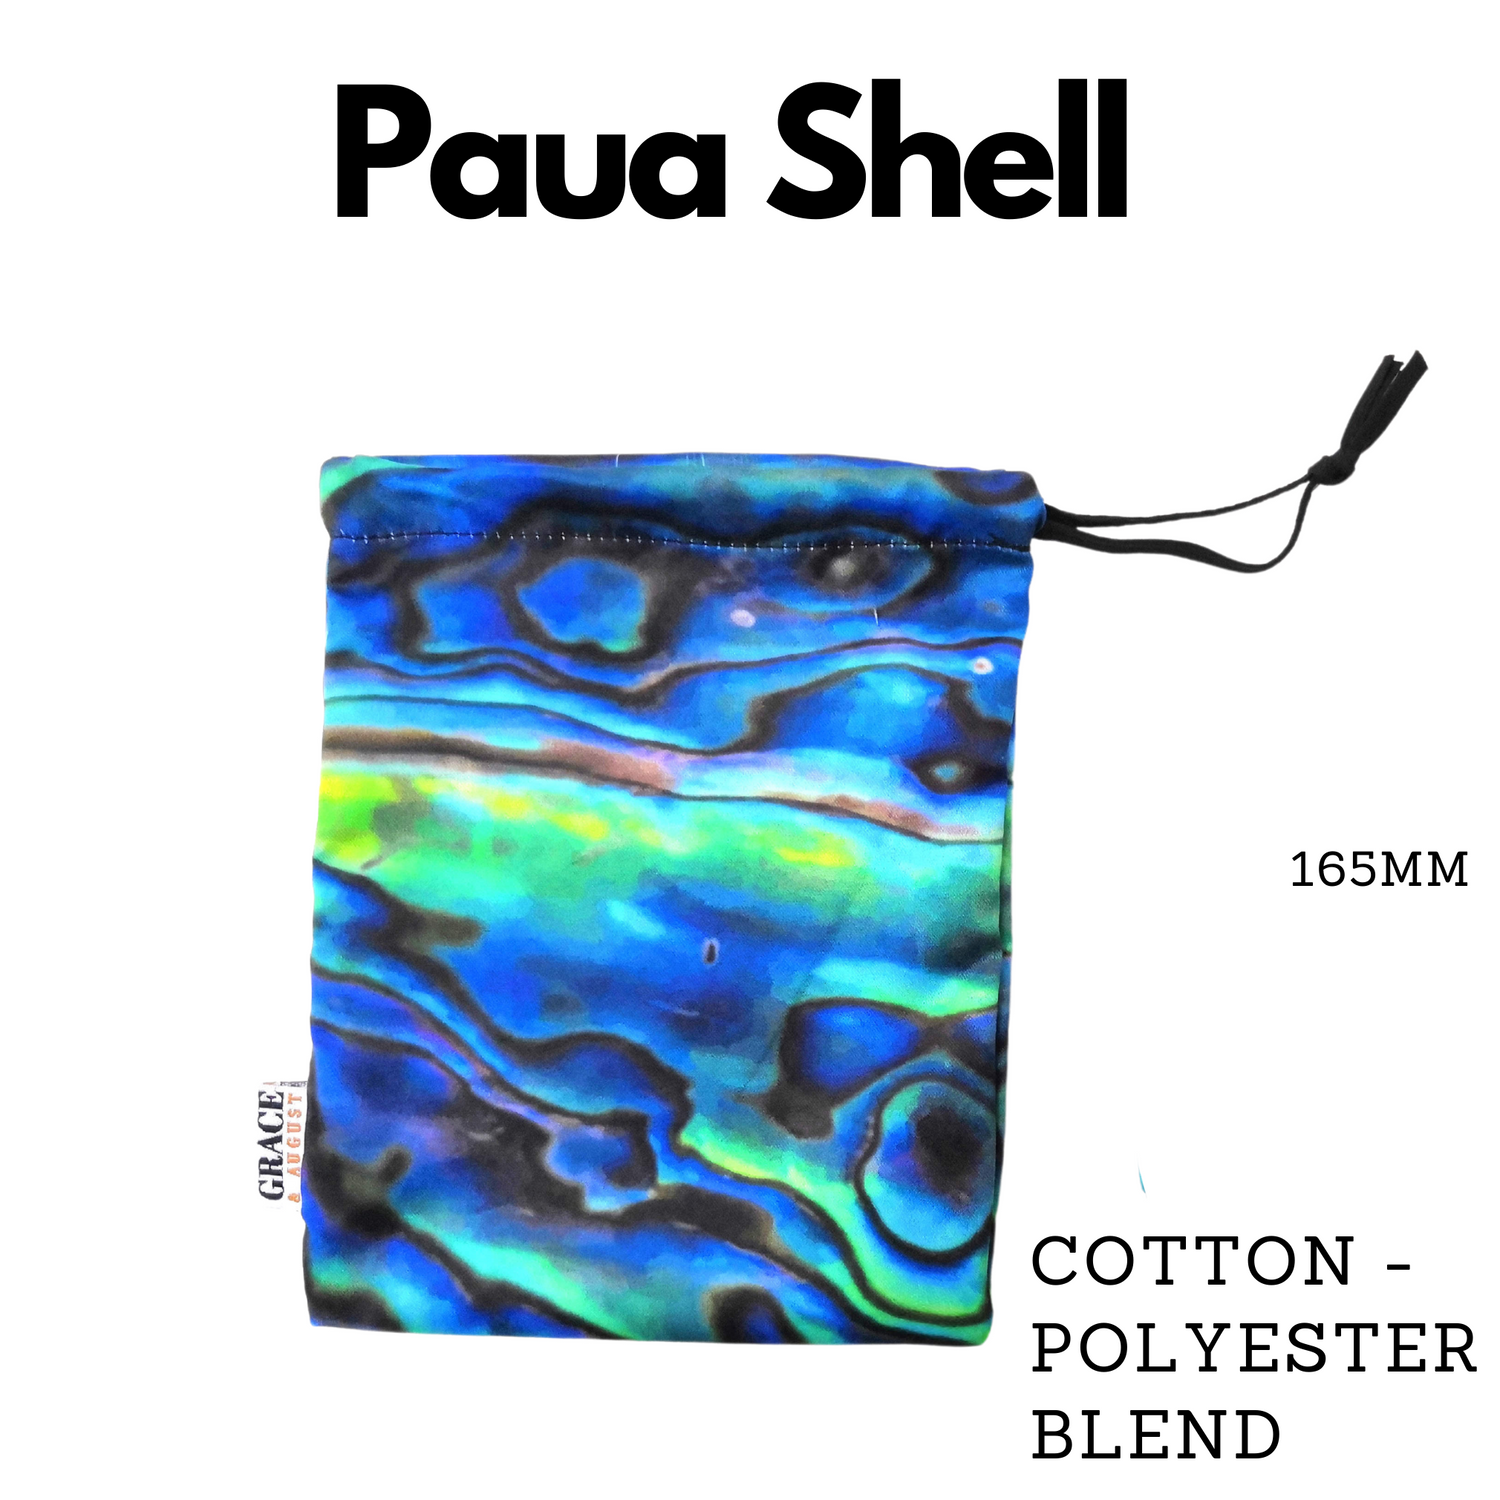 Paua shell drawstring bag